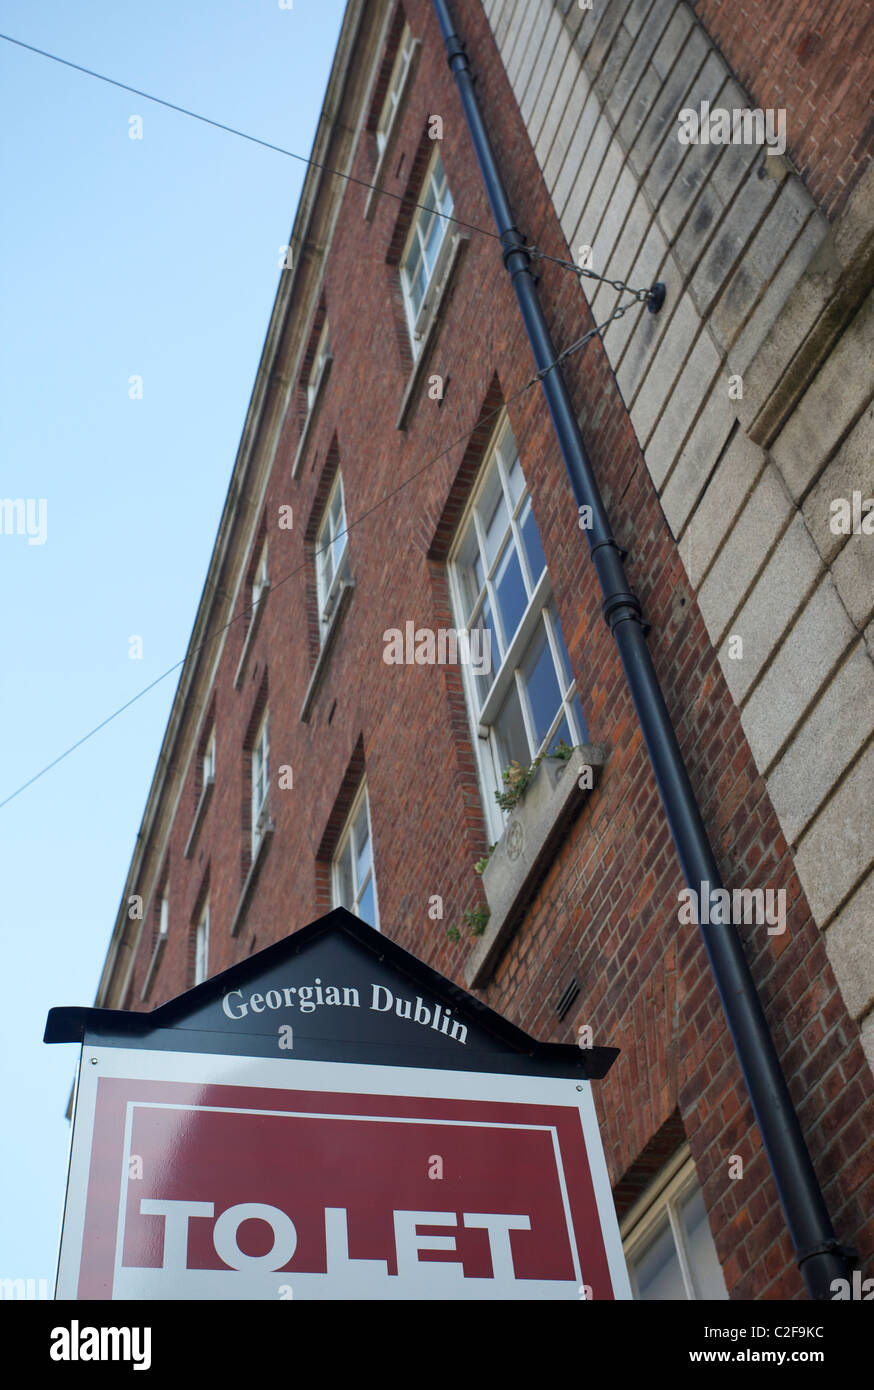 Para que firmen en el distrito de negocios de Dublín con una casa georgiana en segundo plano. Foto de stock